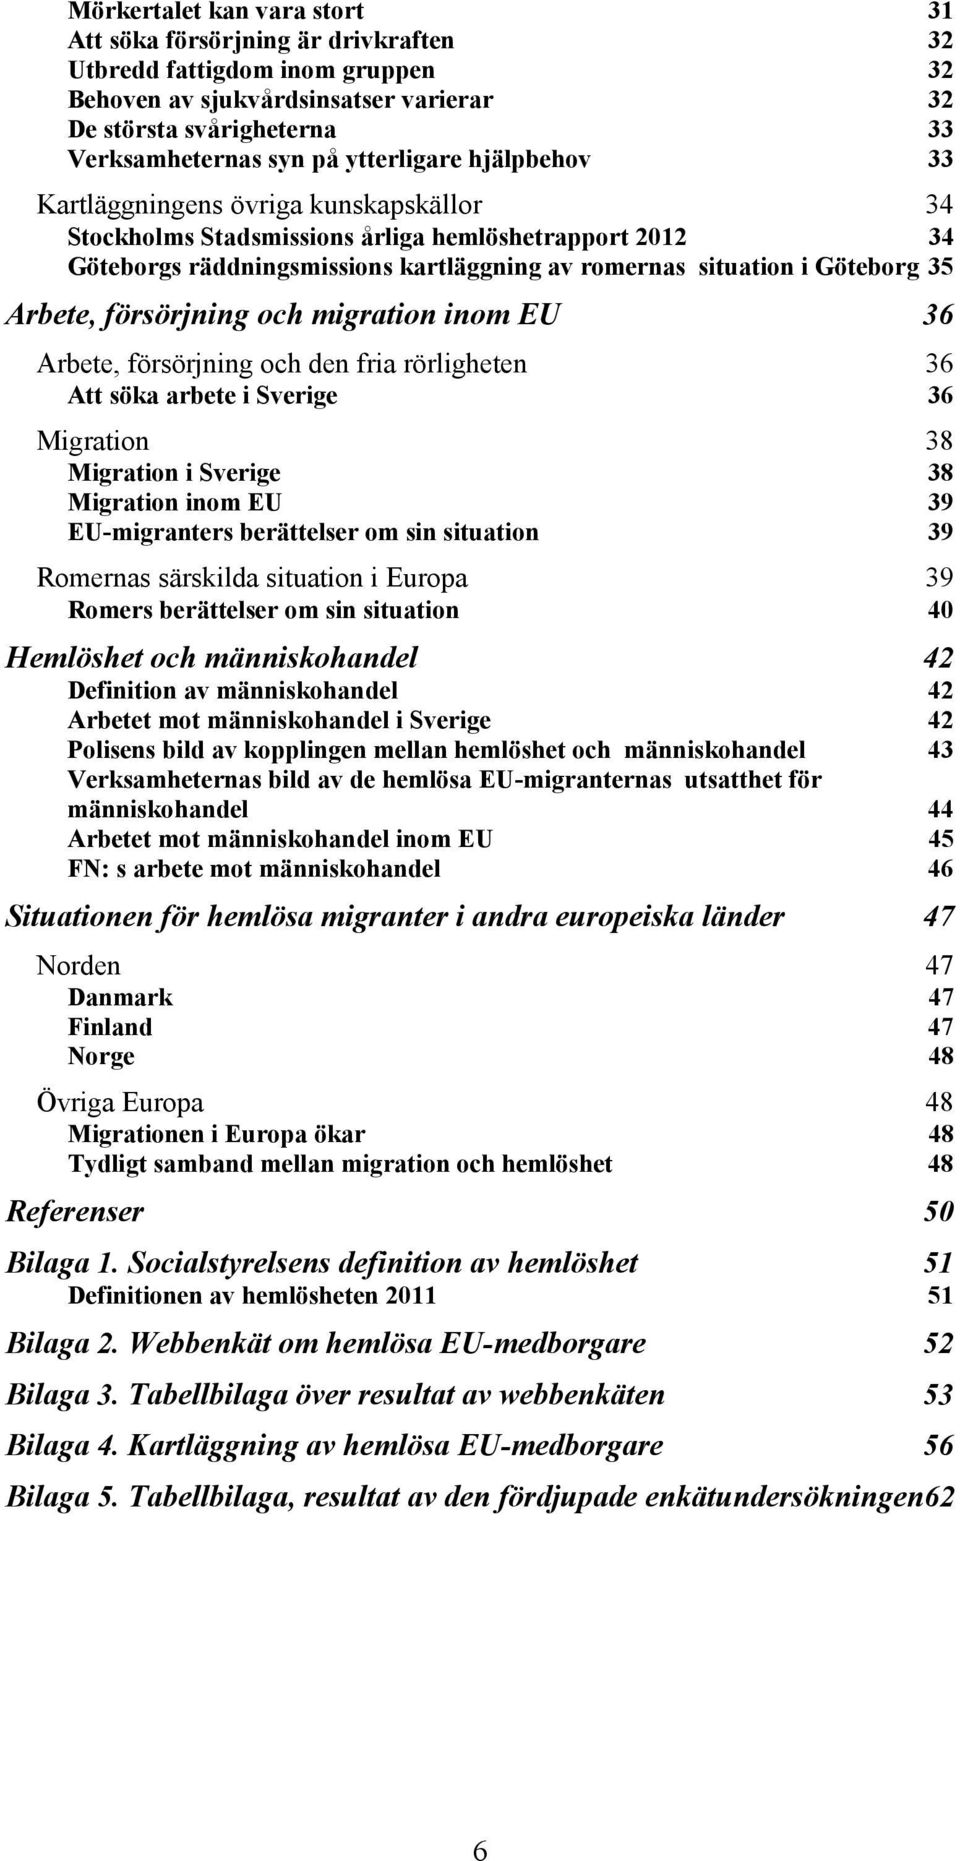 35 Arbete, försörjning och migration inom EU 36 Arbete, försörjning och den fria rörligheten 36 Att söka arbete i Sverige 36 Migration 38 Migration i Sverige 38 Migration inom EU 39 EU-migranters